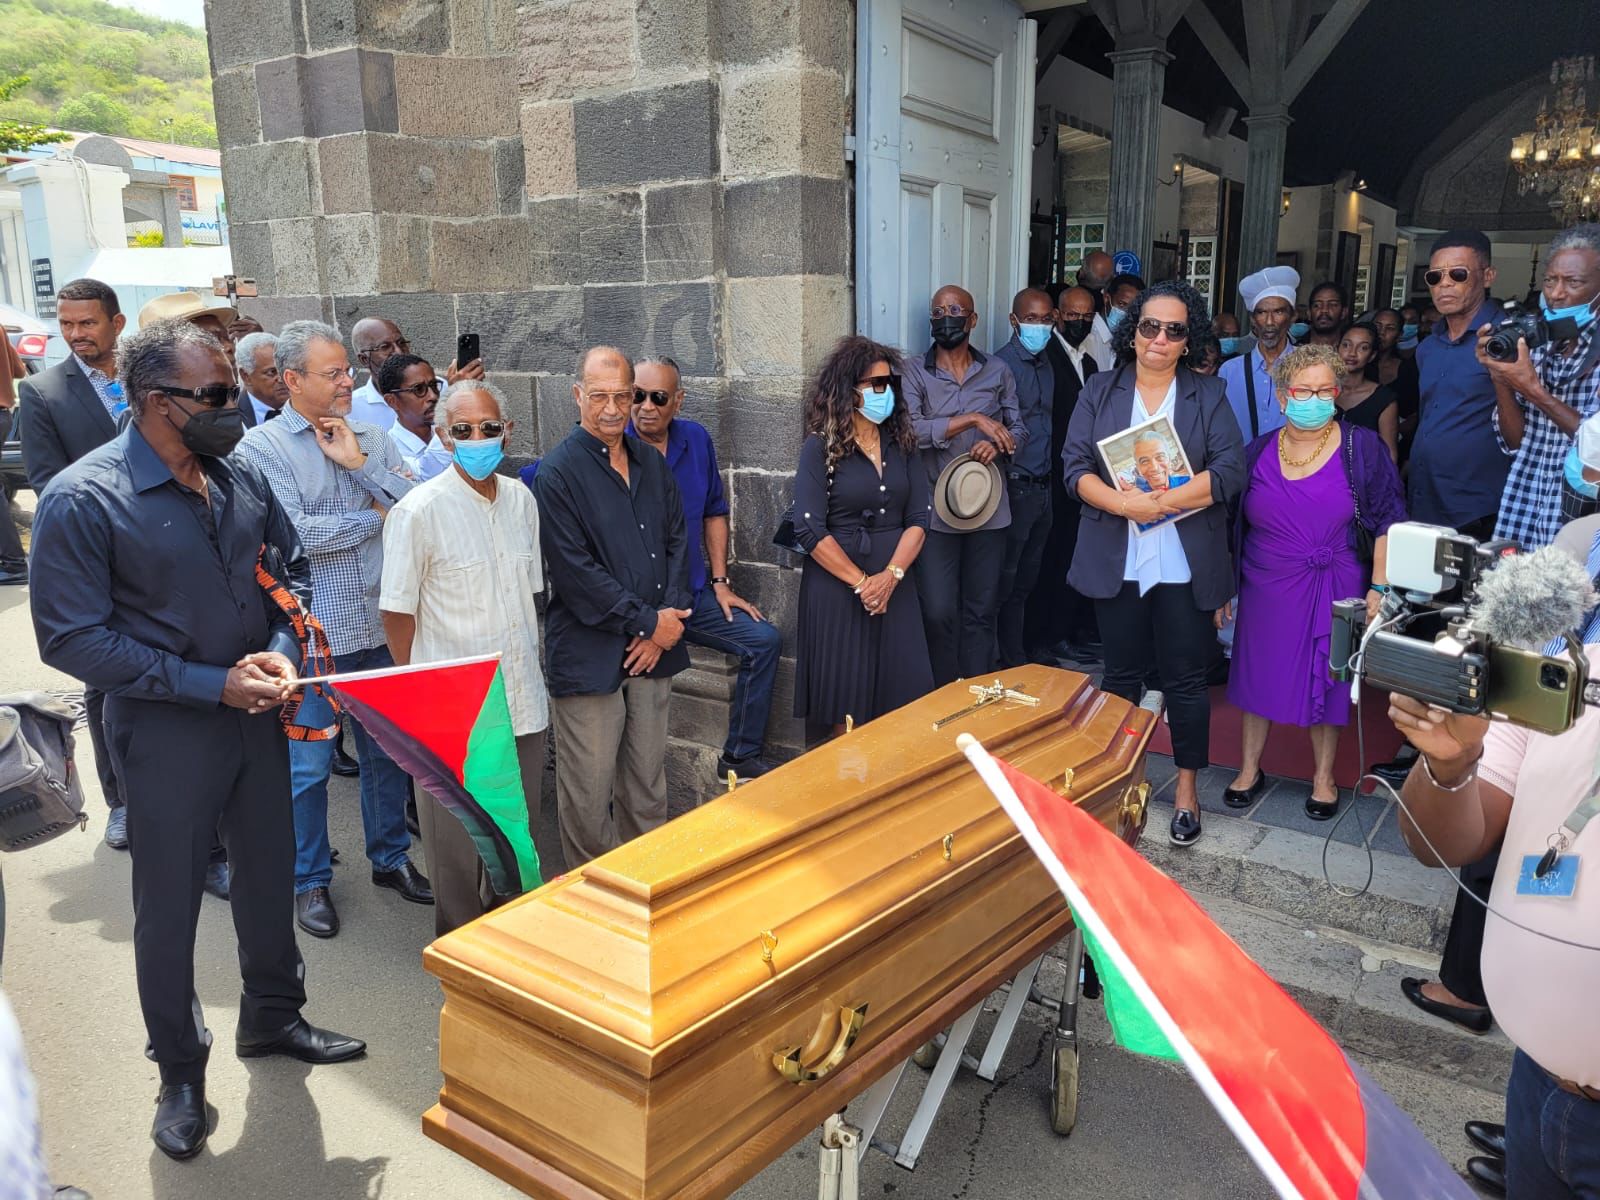     La famille et les proches de Camille Chauvet réunis pour ses funérailles

